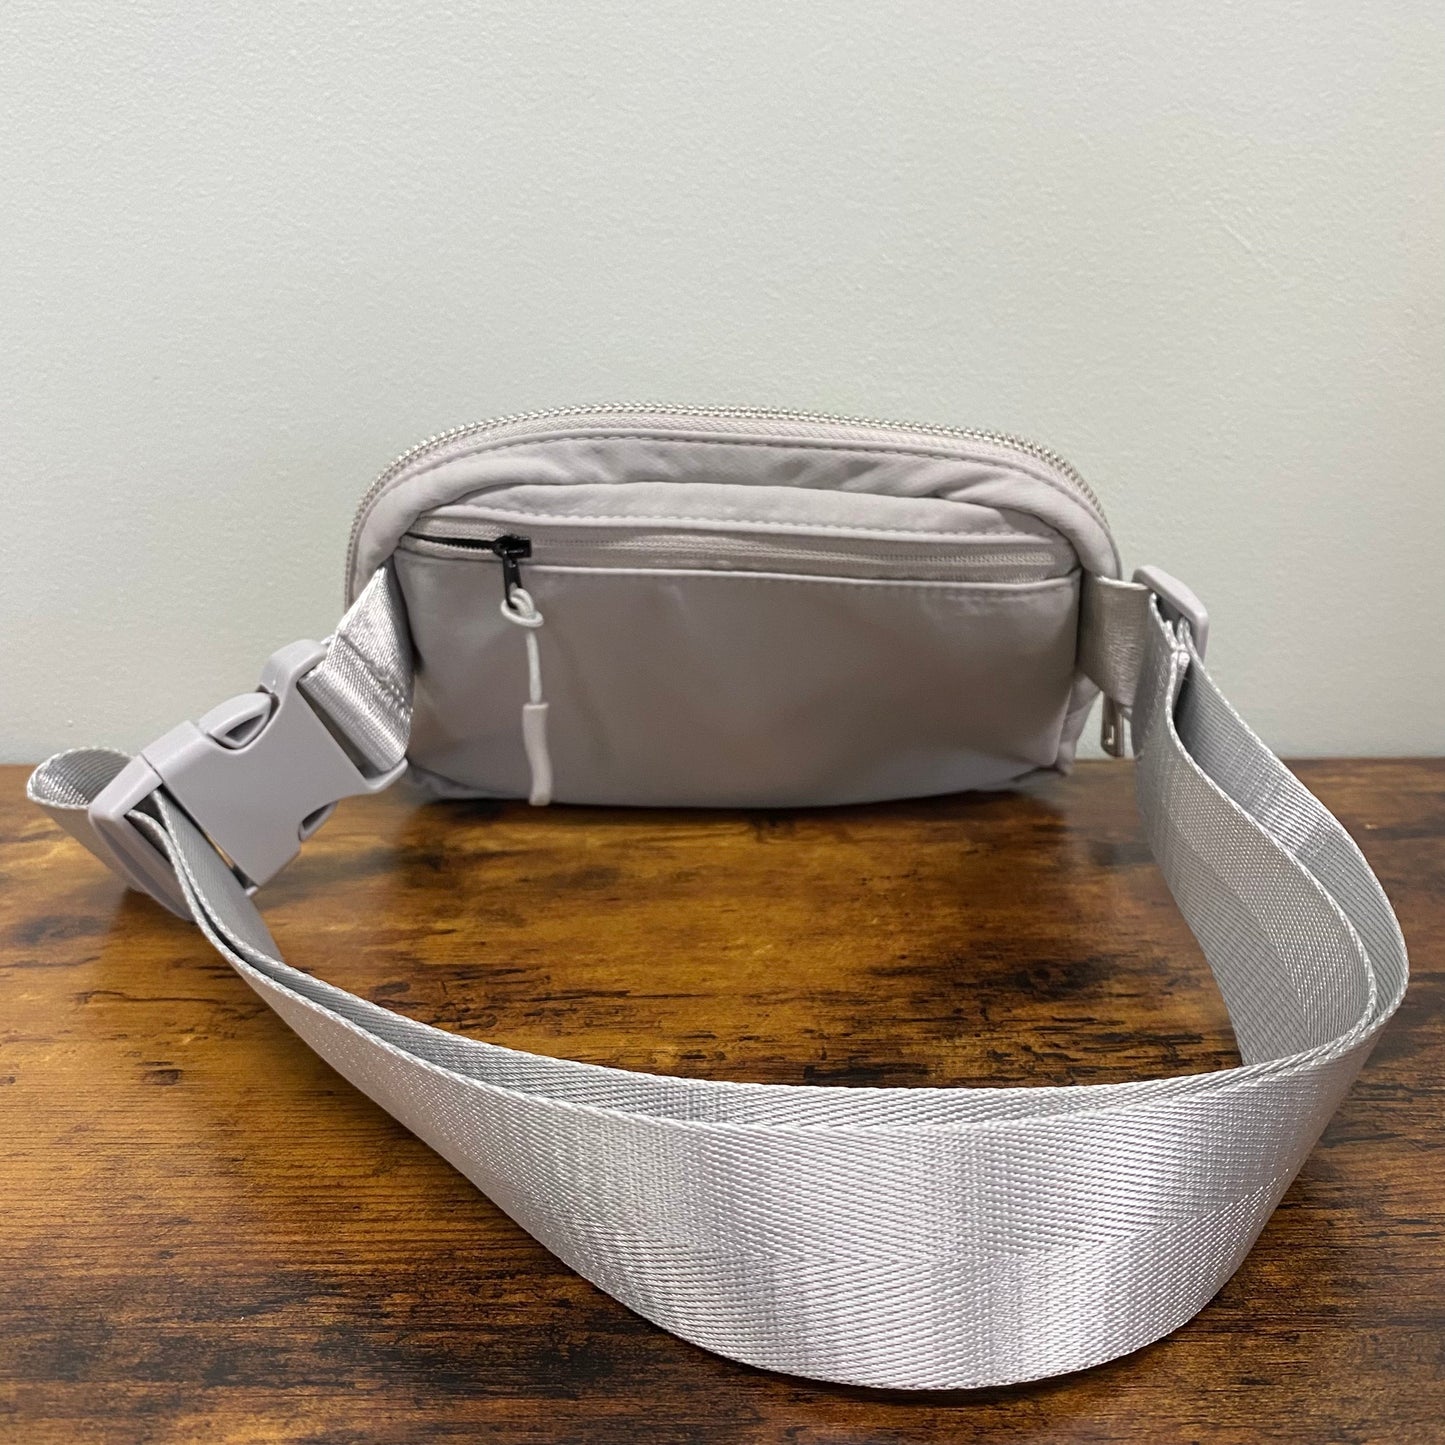 The Nylon Belt Bag - #2